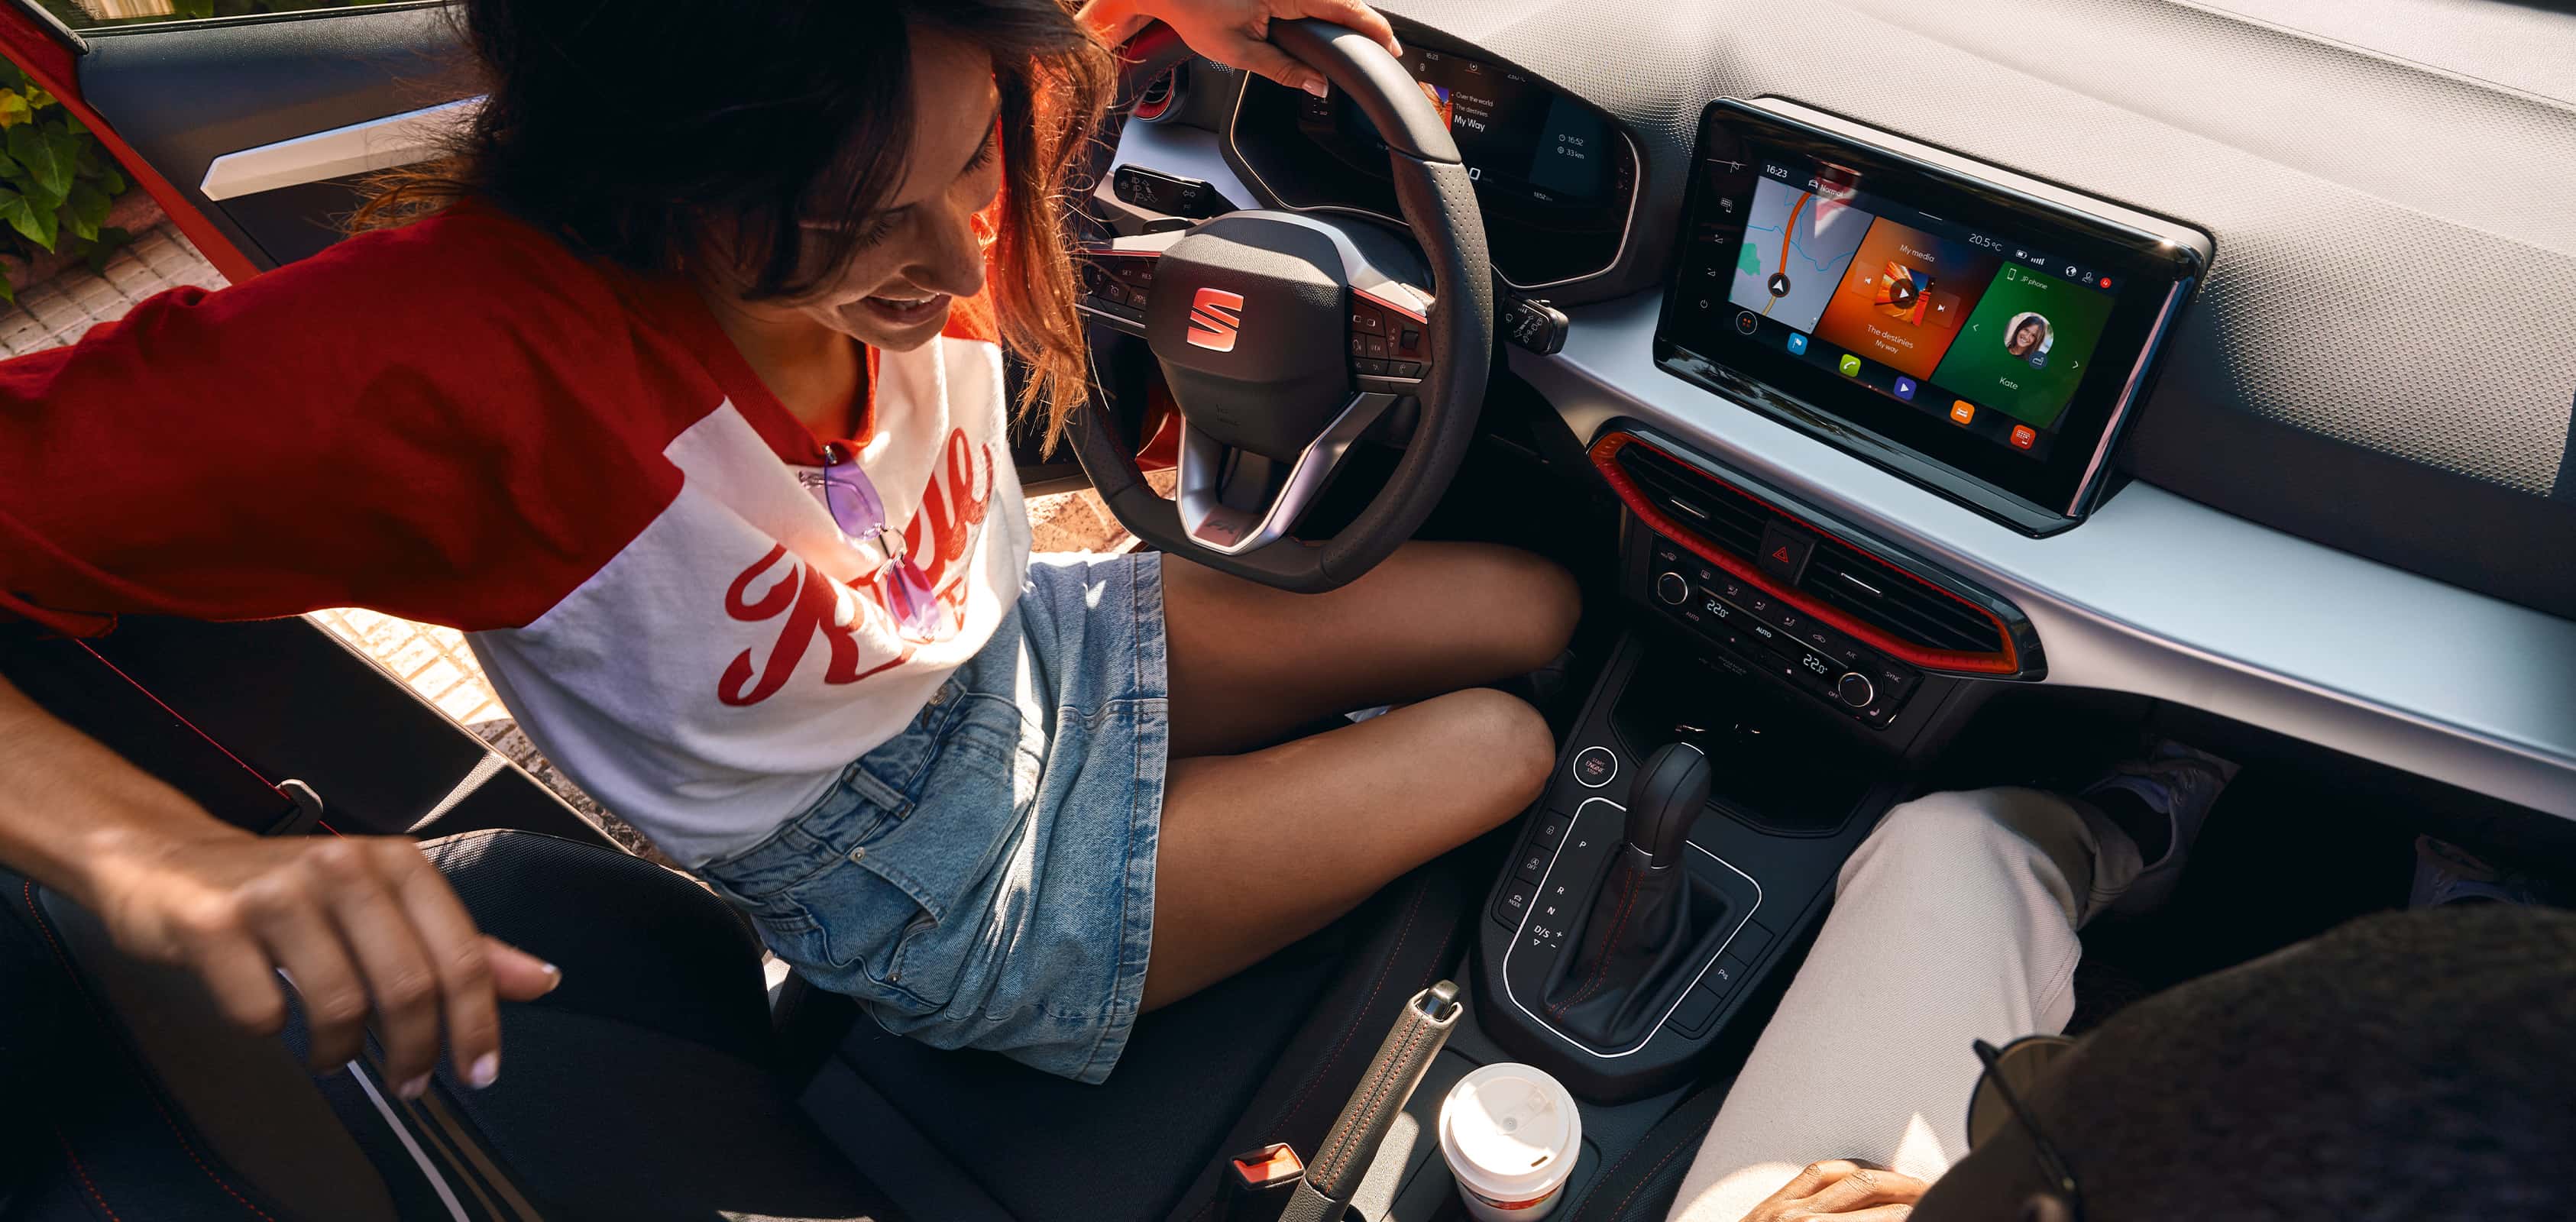 SEAT Ibiza vue intérieure avec le volant et l’écran du système d’infodivertissement